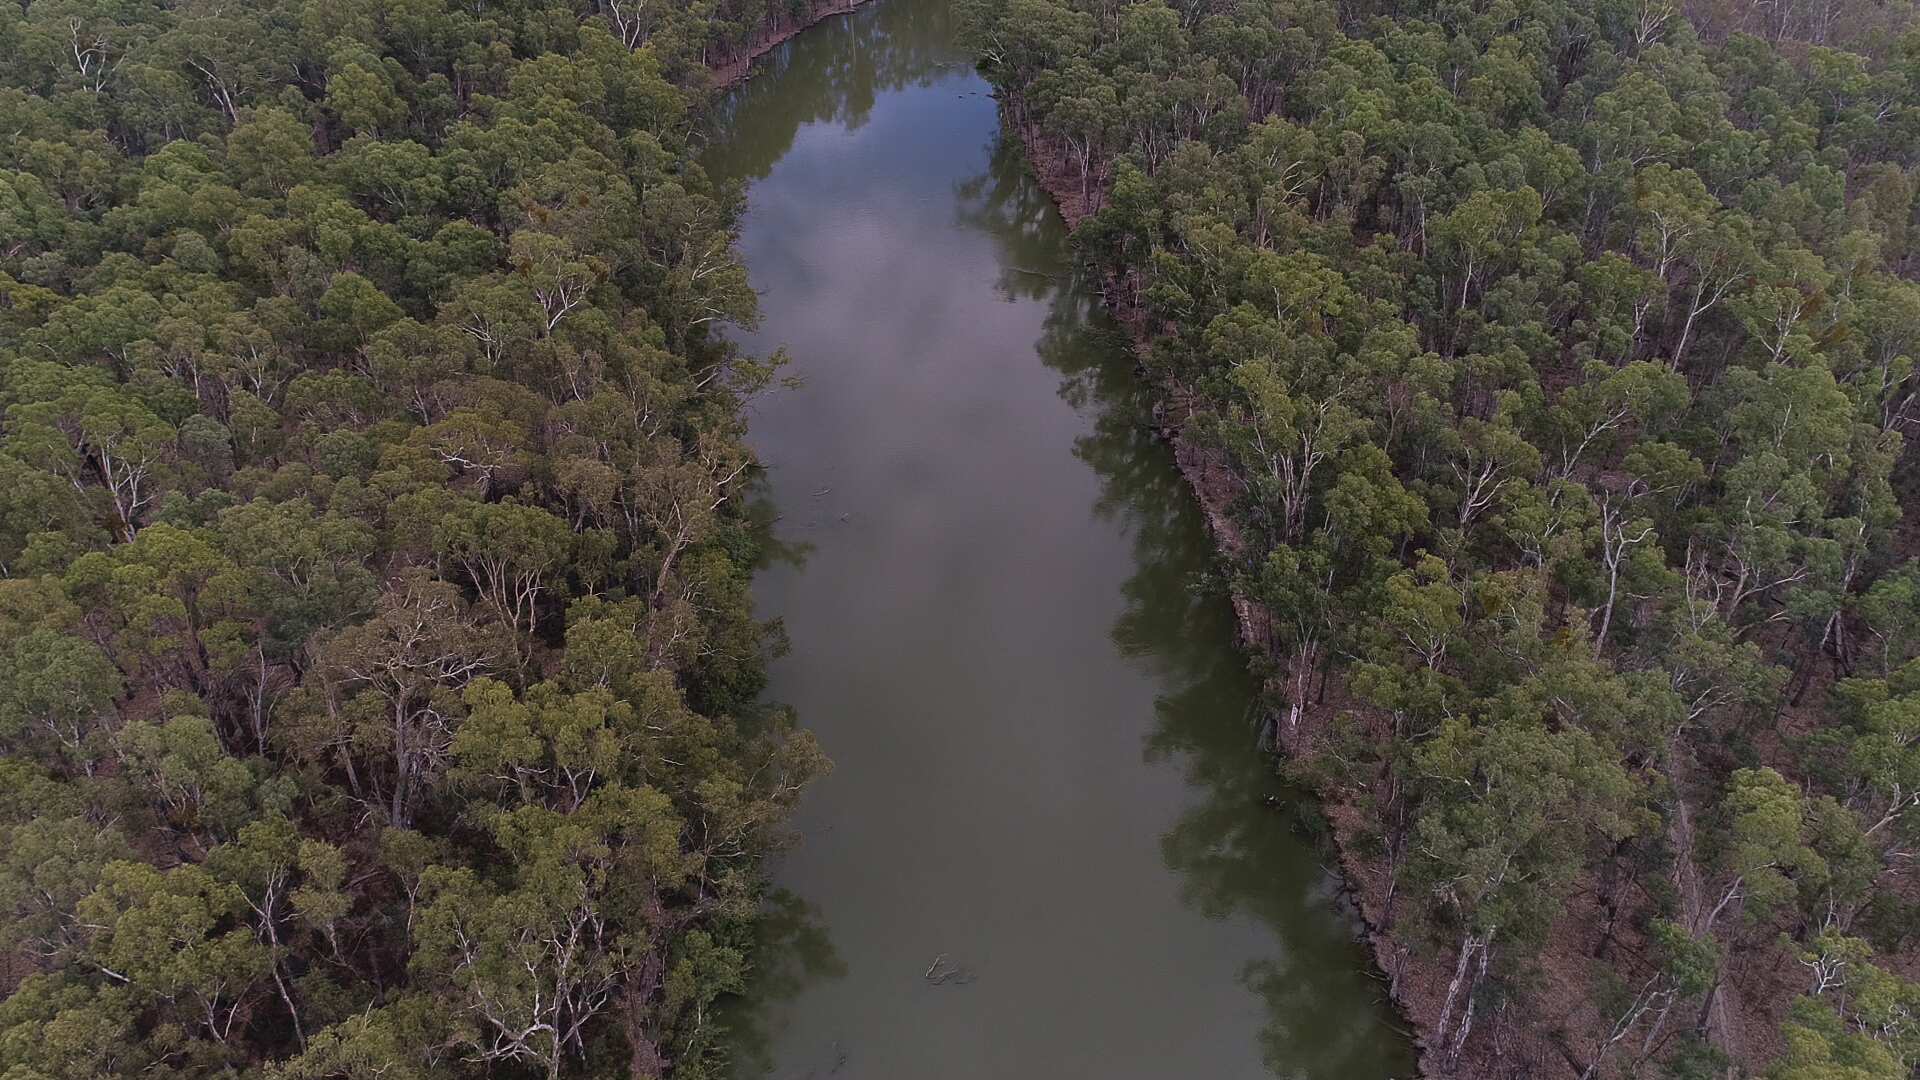 一条狭窄的河流穿过图像的中心，两边是厚厚的河红胶树。